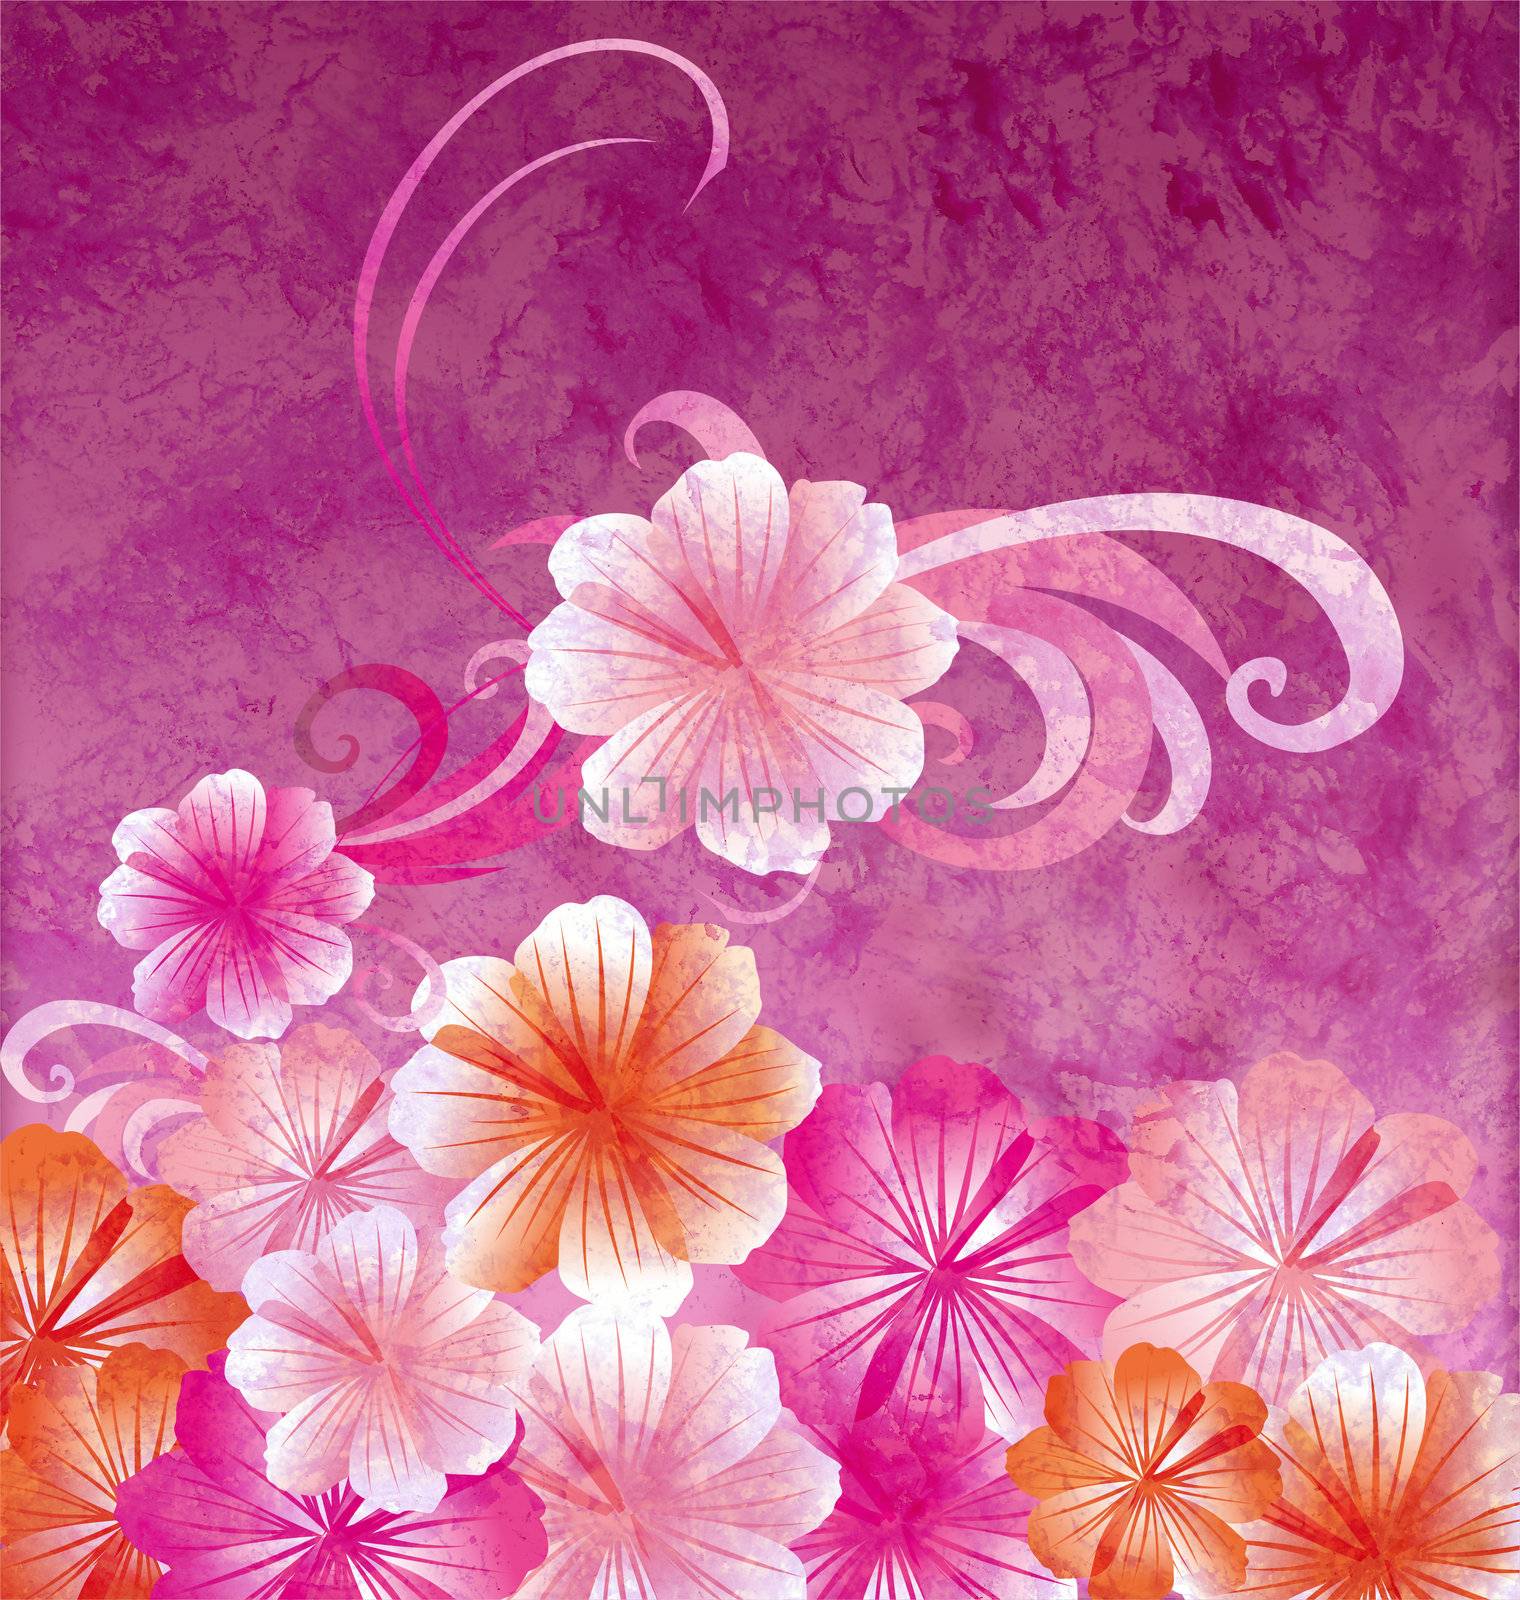 pink flowers on dark pink background grunge illustration by CherJu